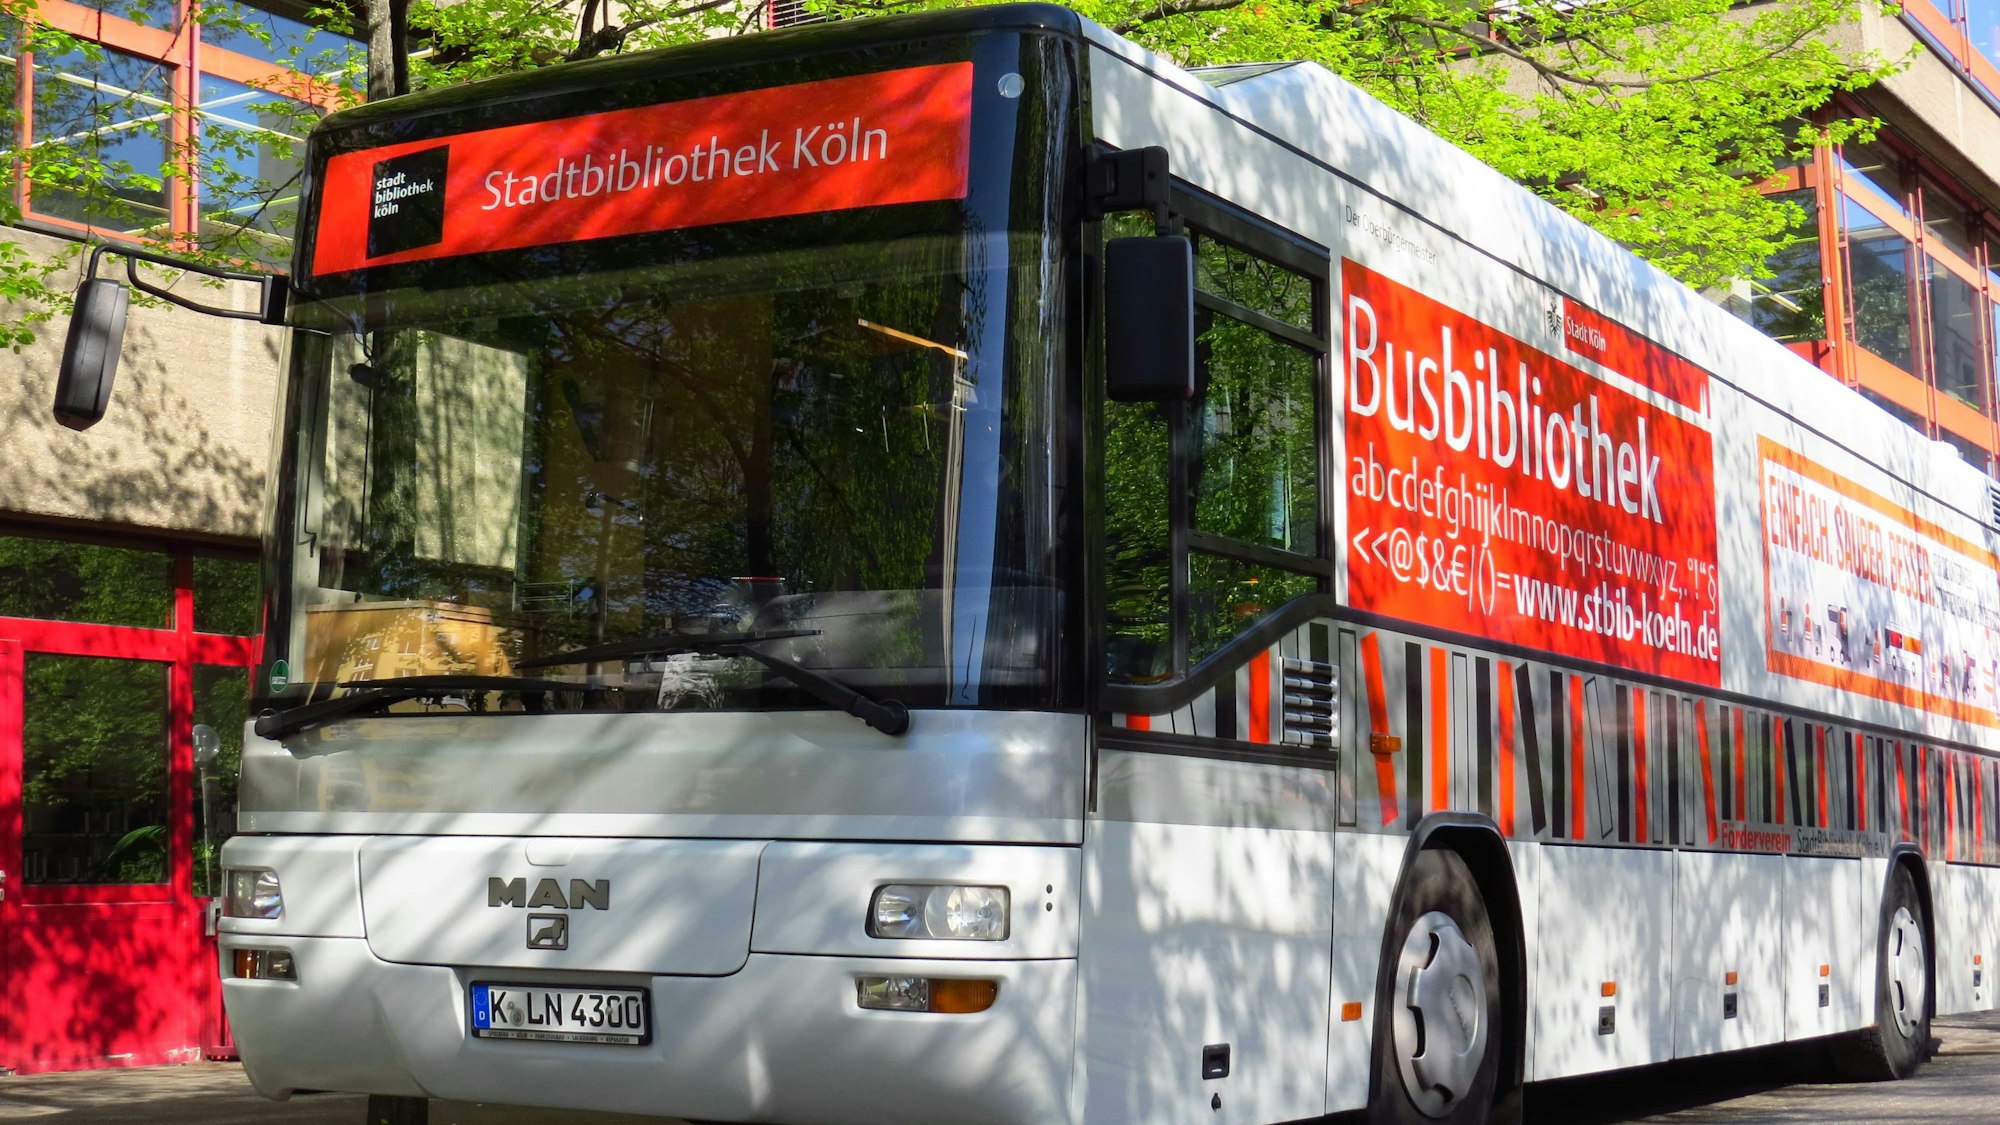 Bus mit der Aufschrift „Stadtbibliothek Köln“ und „Busbibliothek“